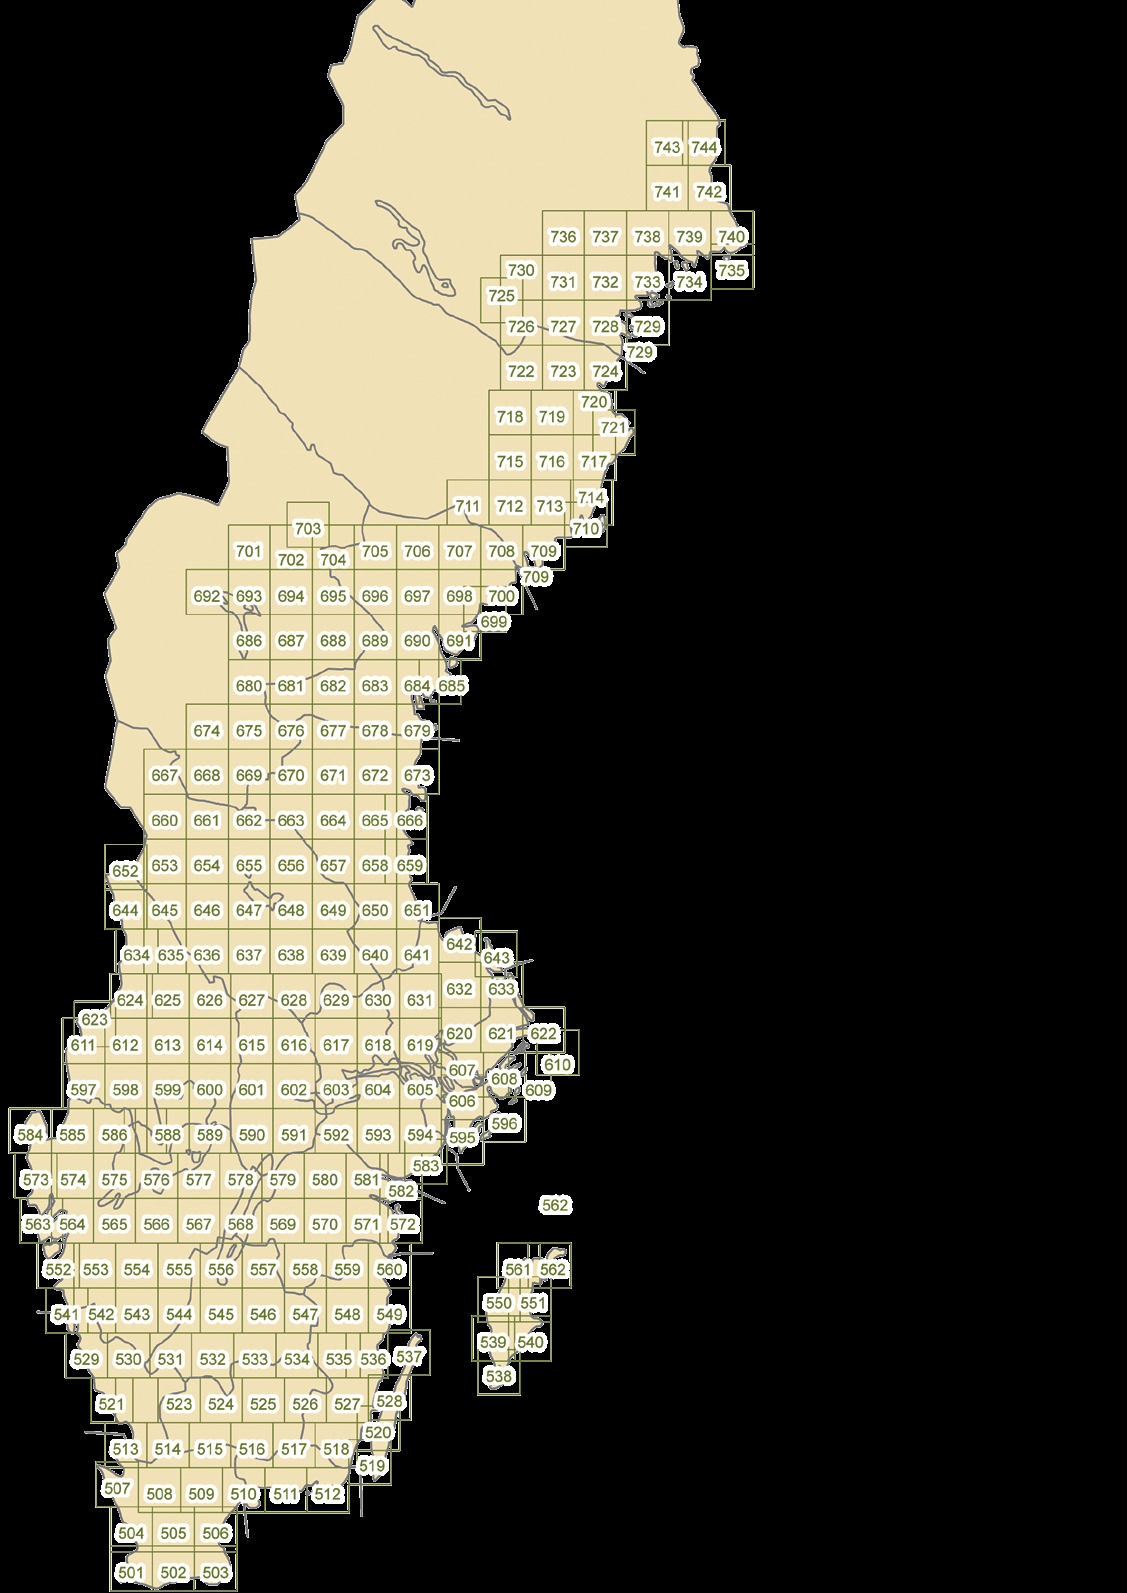 terrängkartan / 2014 Terrängkartan omfattar 244 blad Terrängkartan trycks i skala 1:50 000 med